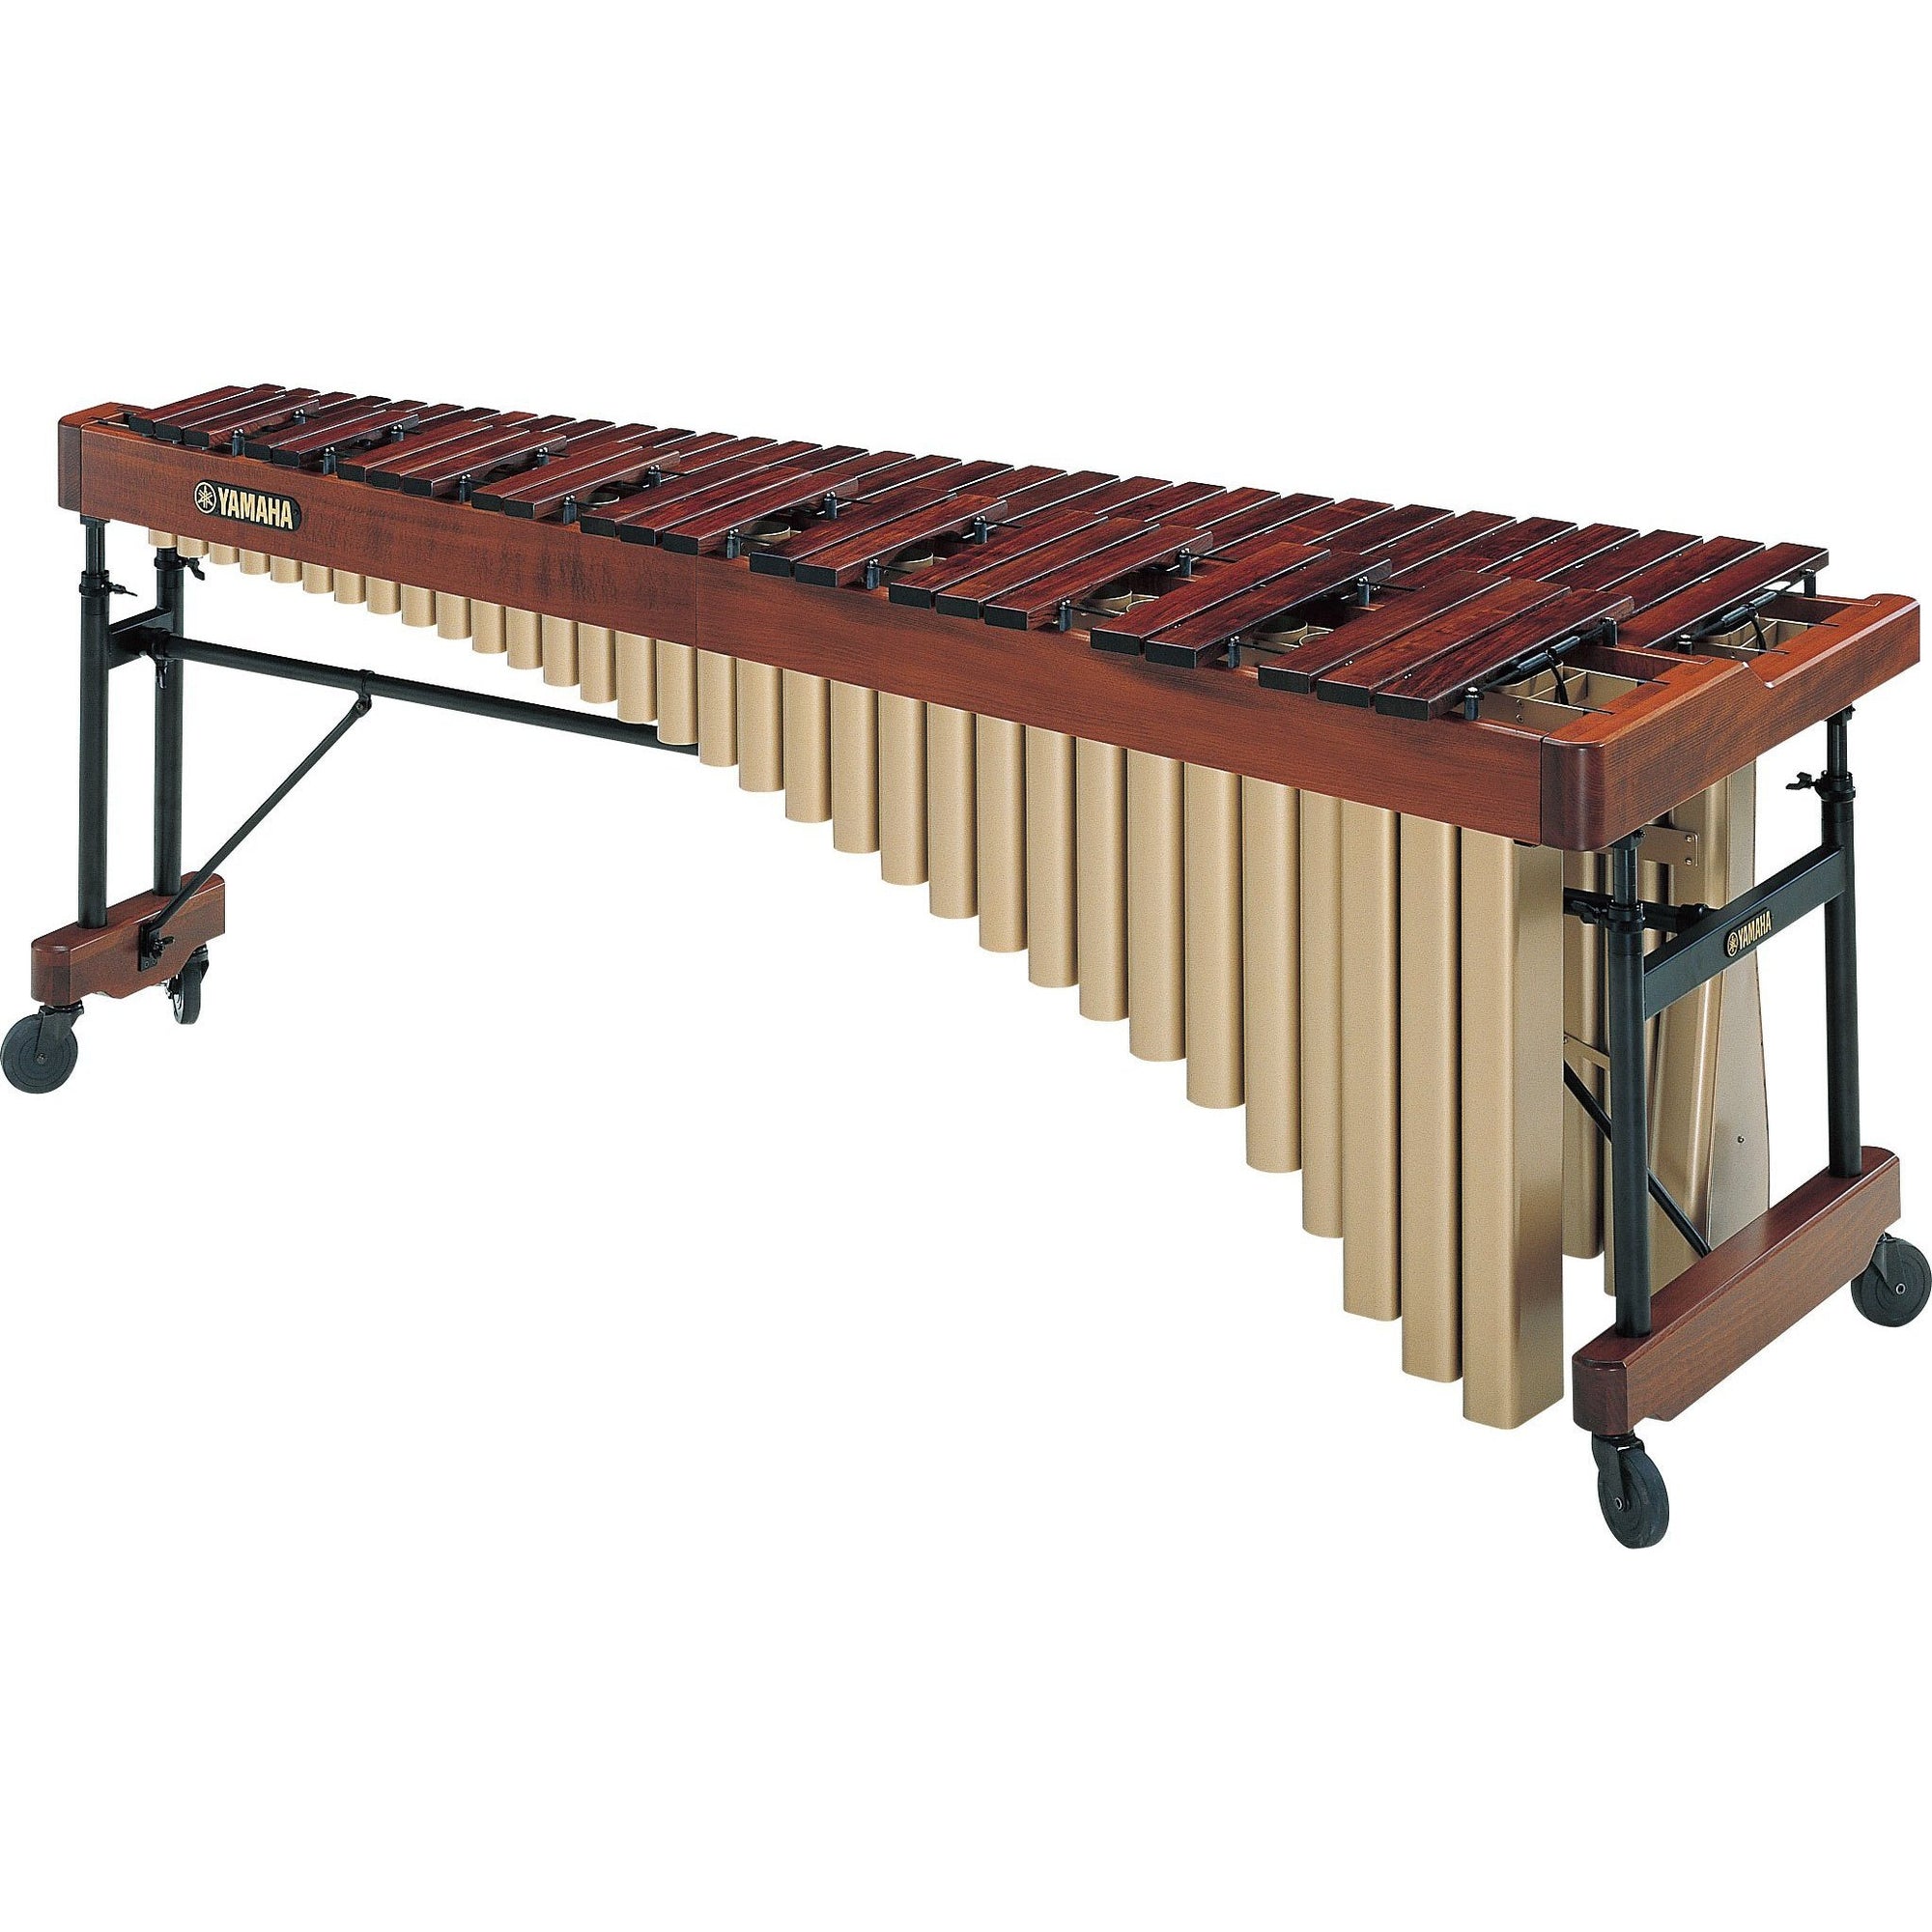 Yamaha - YM-4900A - Rosewood Marimba (4 1/2-Octave)-Percussion-Yamaha-Music Elements